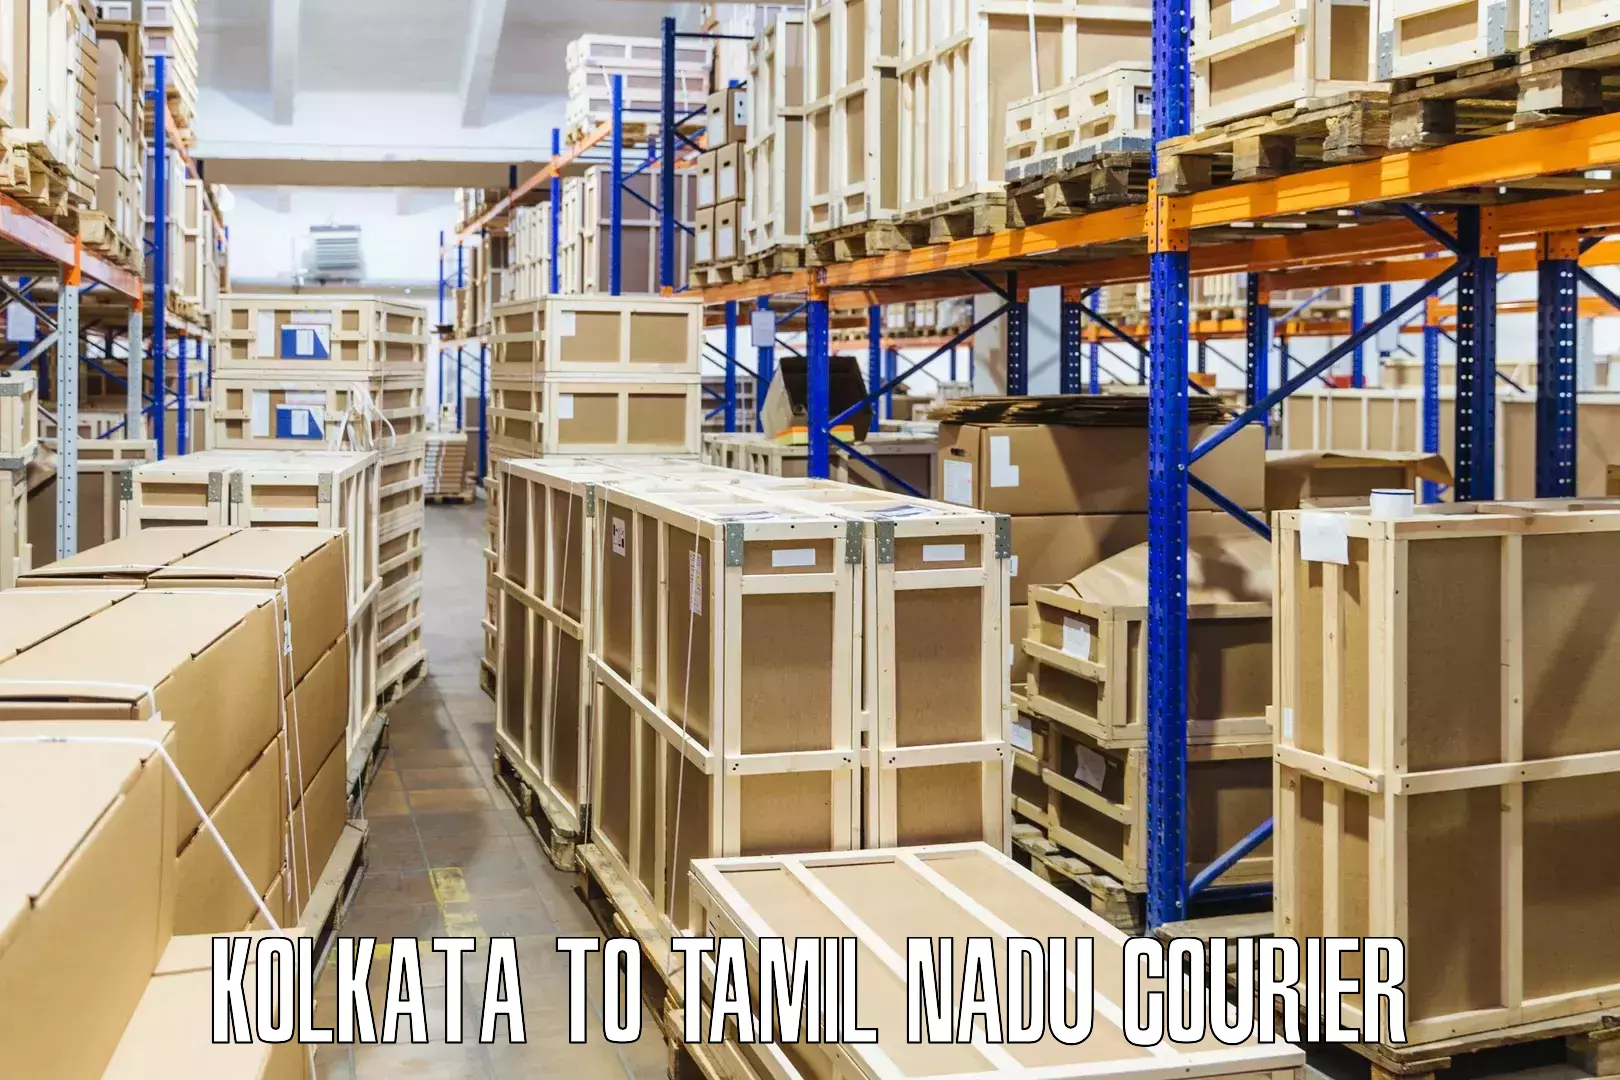 E-commerce fulfillment Kolkata to Tamil Nadu